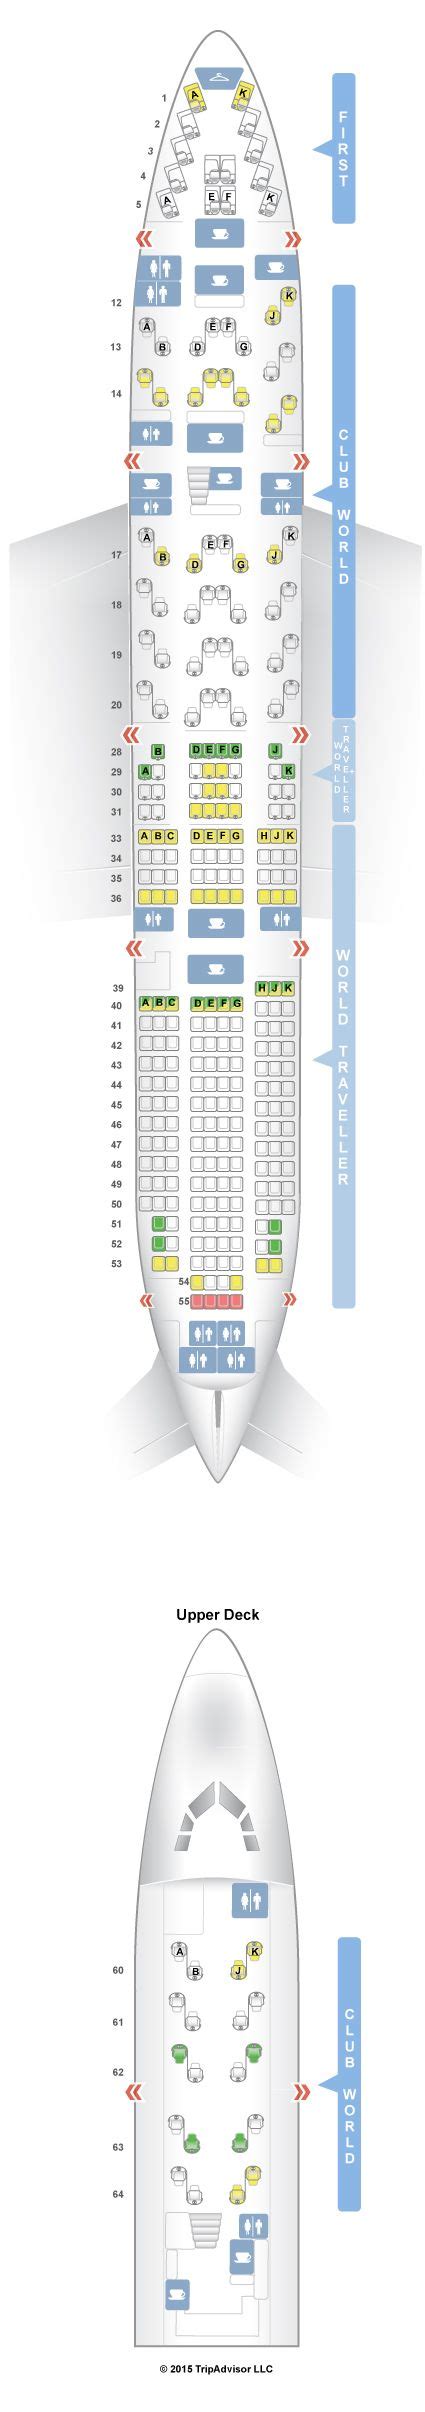 Seatguru Seat Map British Airways Boeing 747 400 744 V2 Seatguru